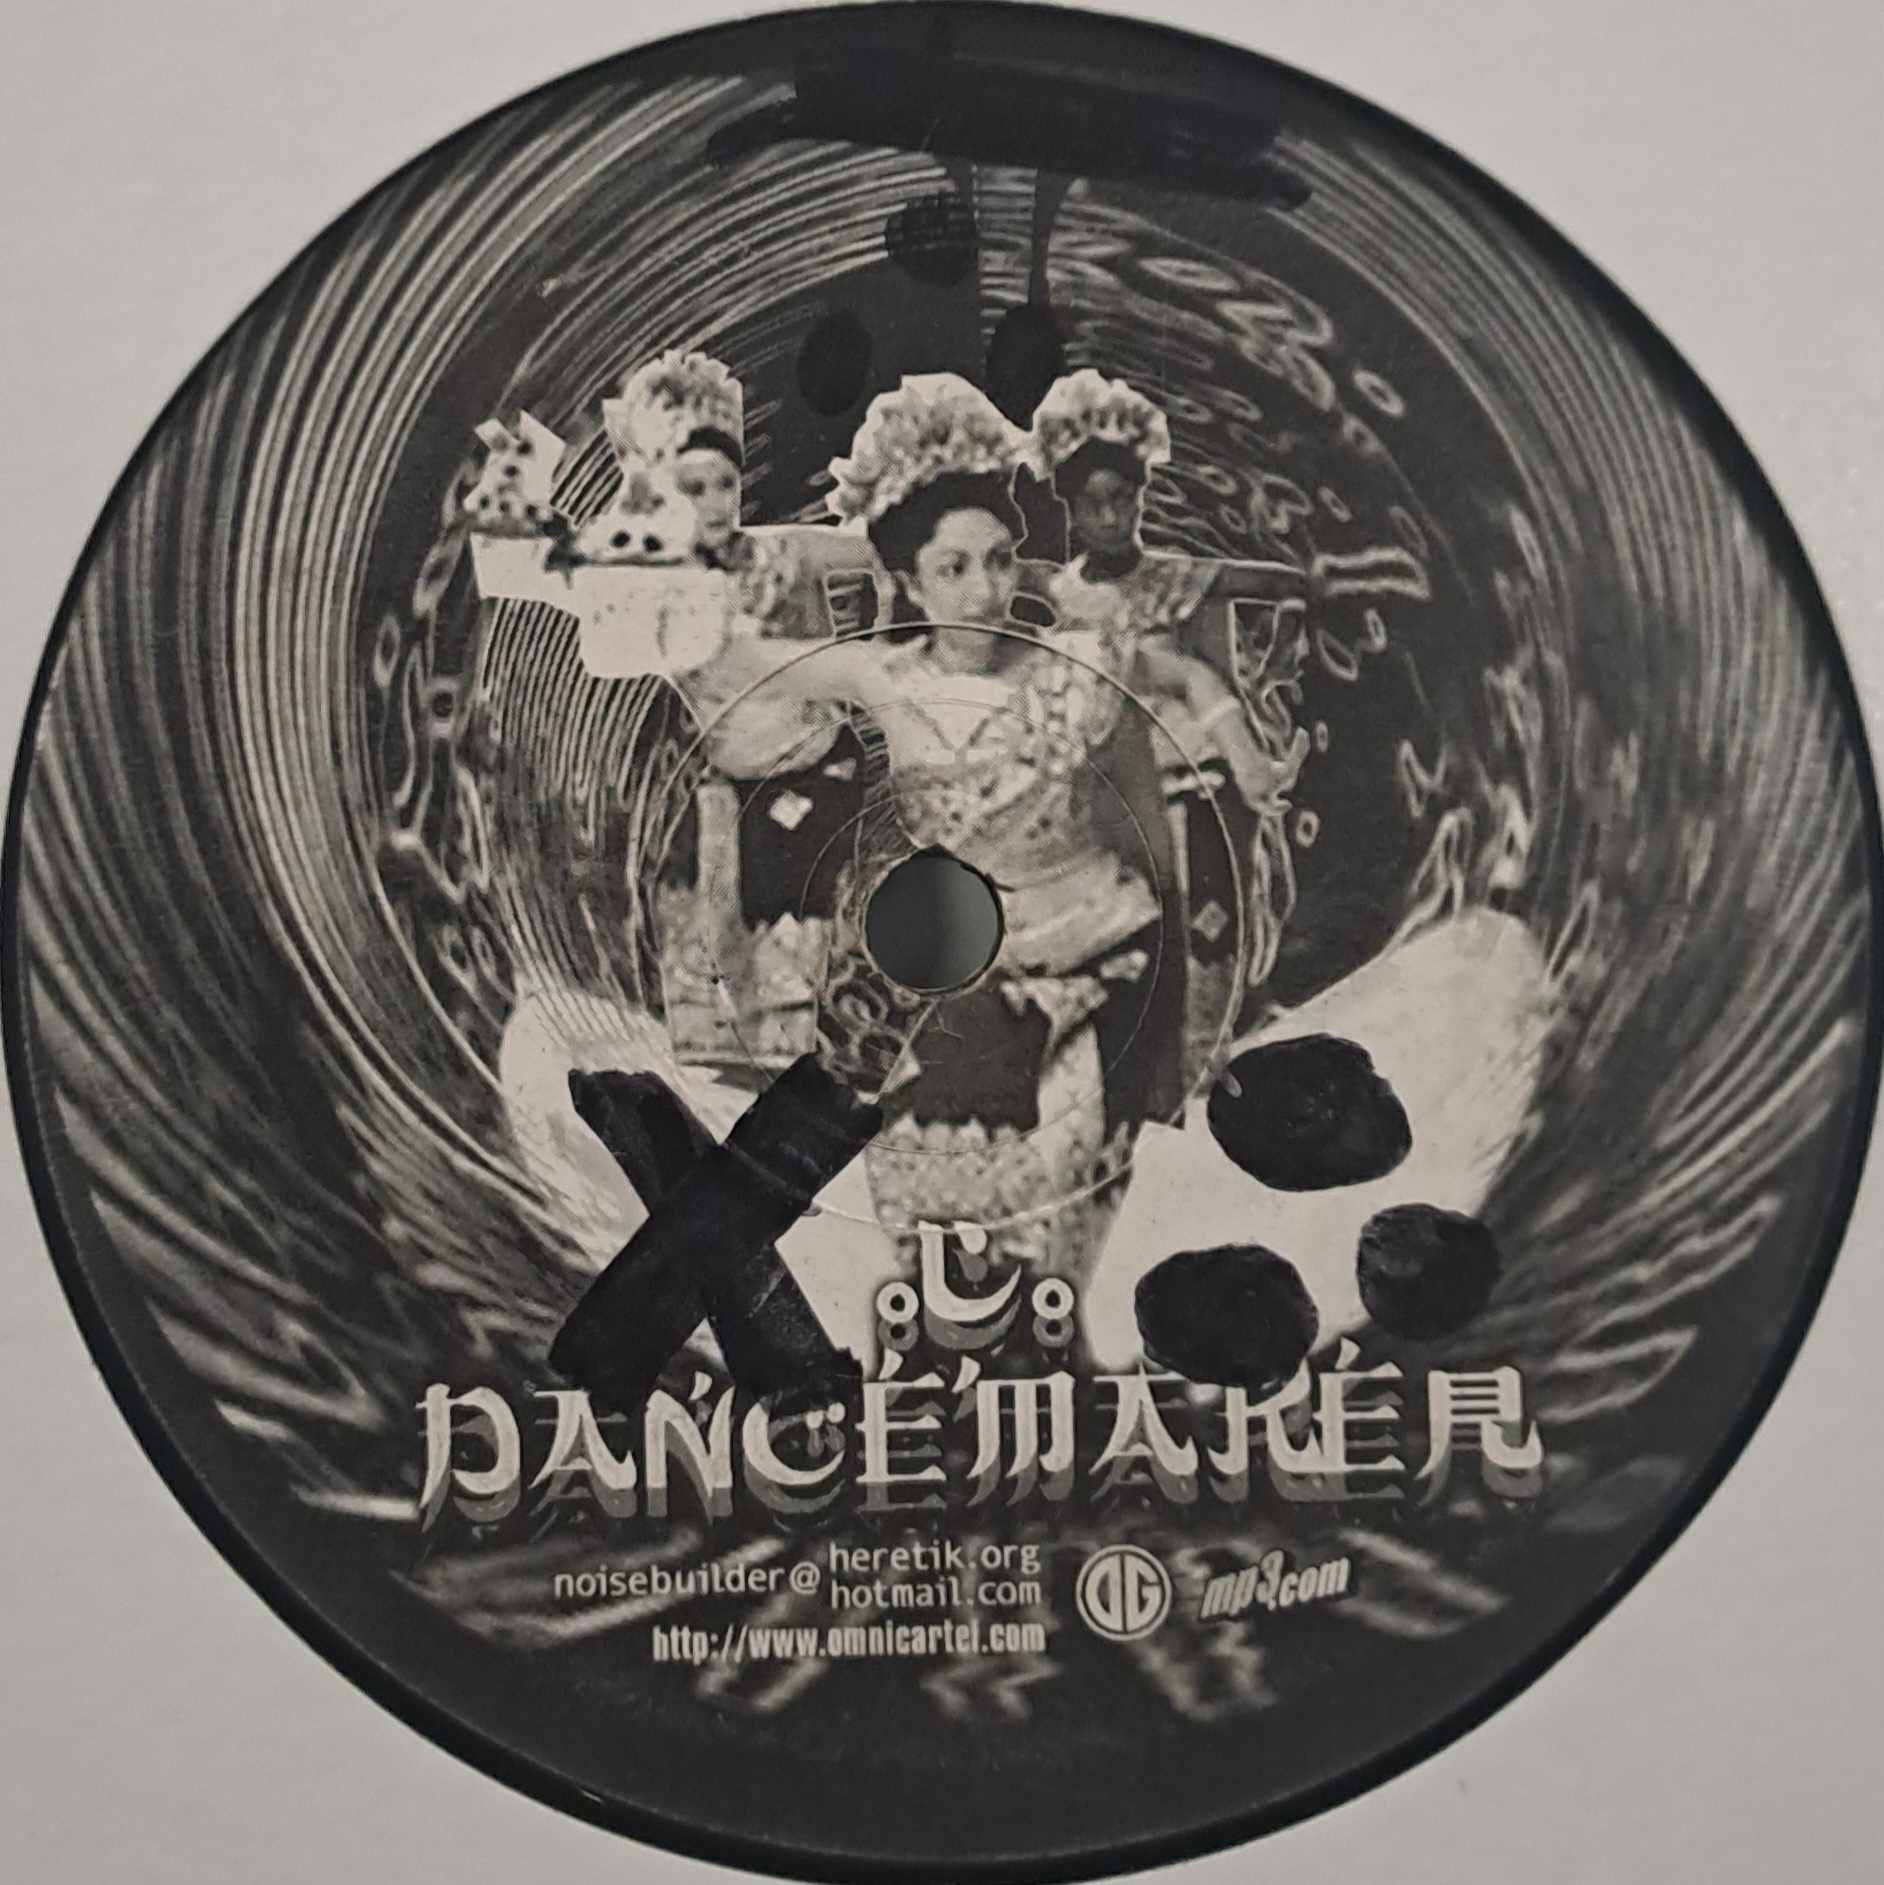 Dancemaker 03 - vinyle hardcore